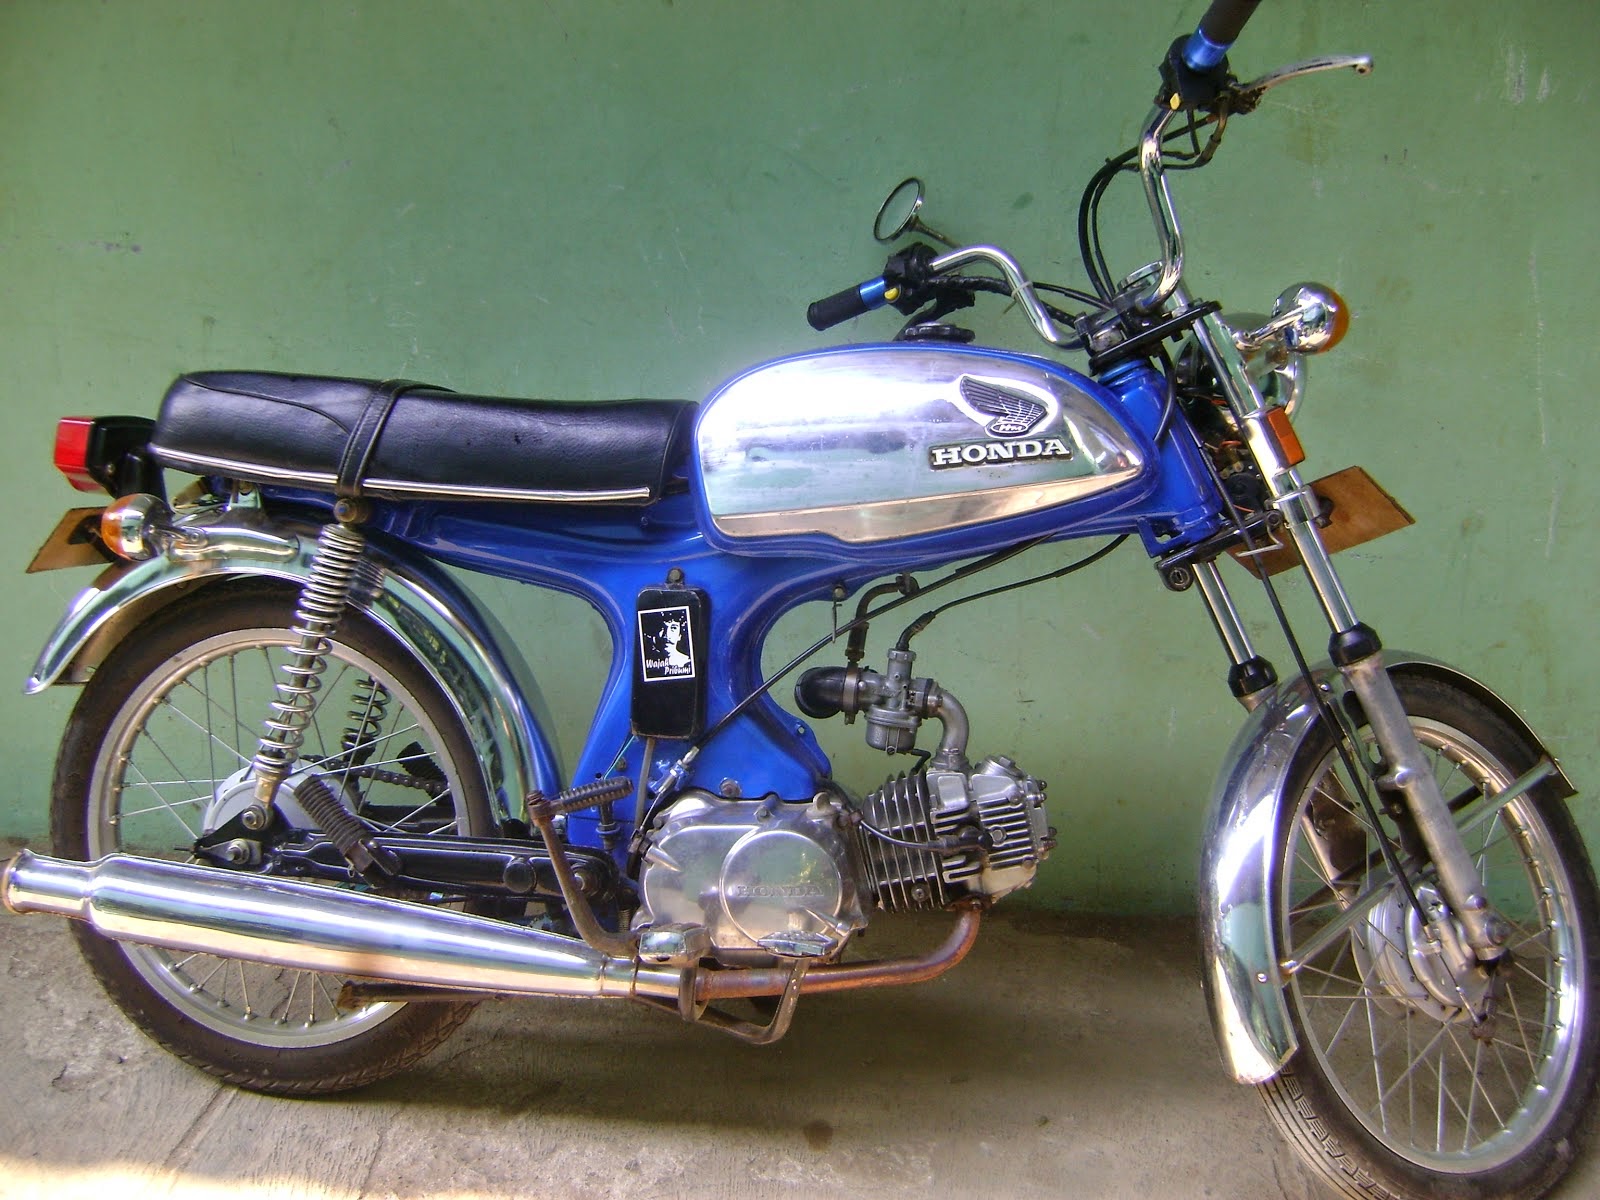 HOBIY Kumpulan Sepeda Motor  Honda Era 60  dan 70an